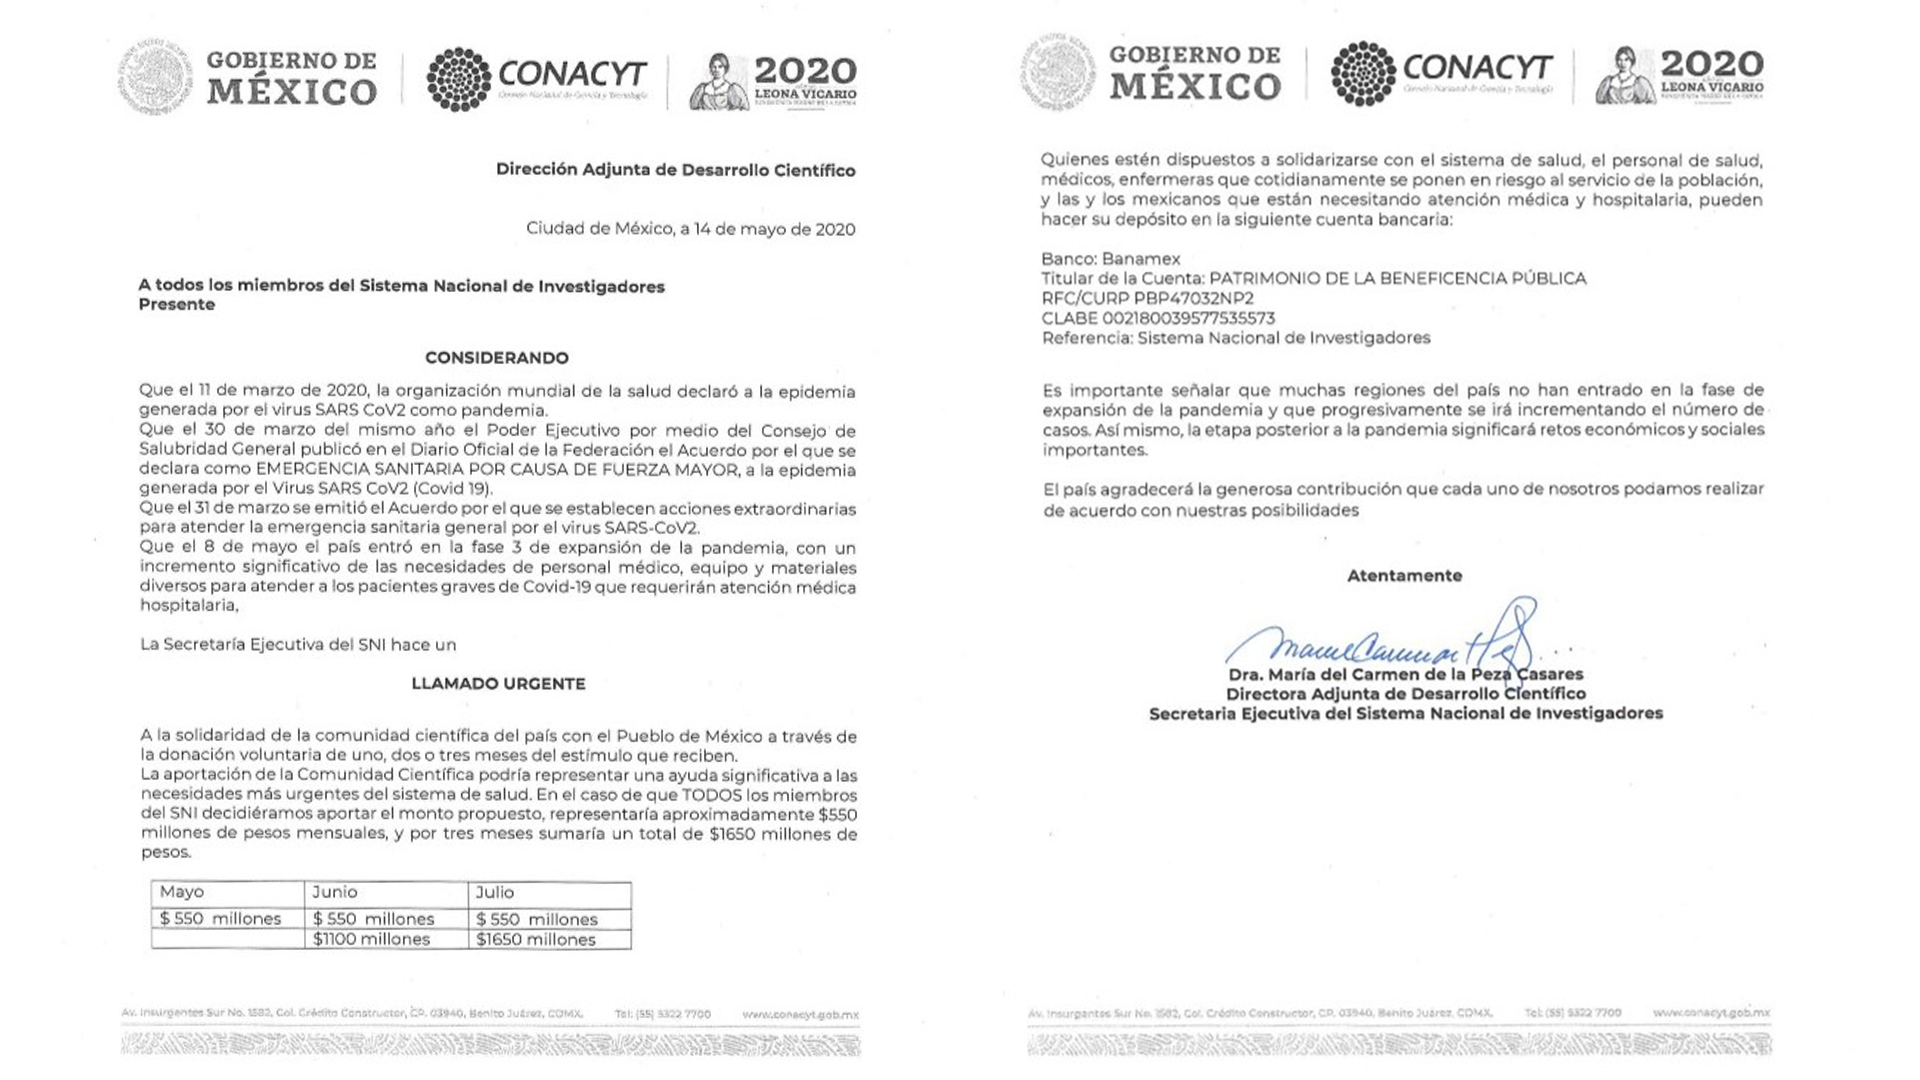 El documento está firmado por la secretaria ejecutiva del SNI, María del Carmen de la Peza (Foto: Especial)